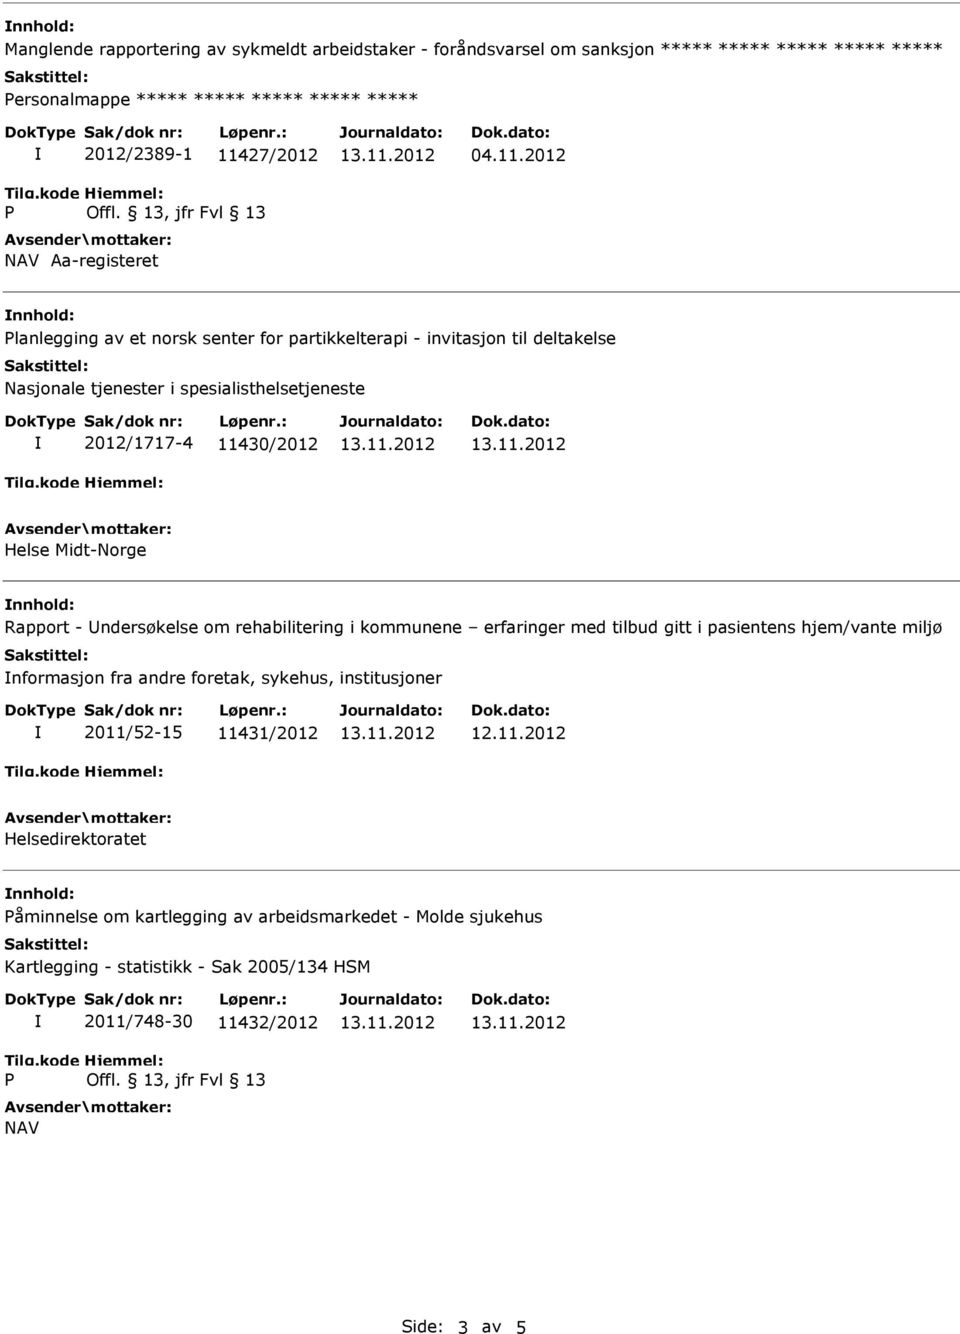 2012 Planlegging av et norsk senter for partikkelterapi - invitasjon til deltakelse Nasjonale tjenester i spesialisthelsetjeneste 2012/1717-4 11430/2012 Helse Midt-Norge Rapport -